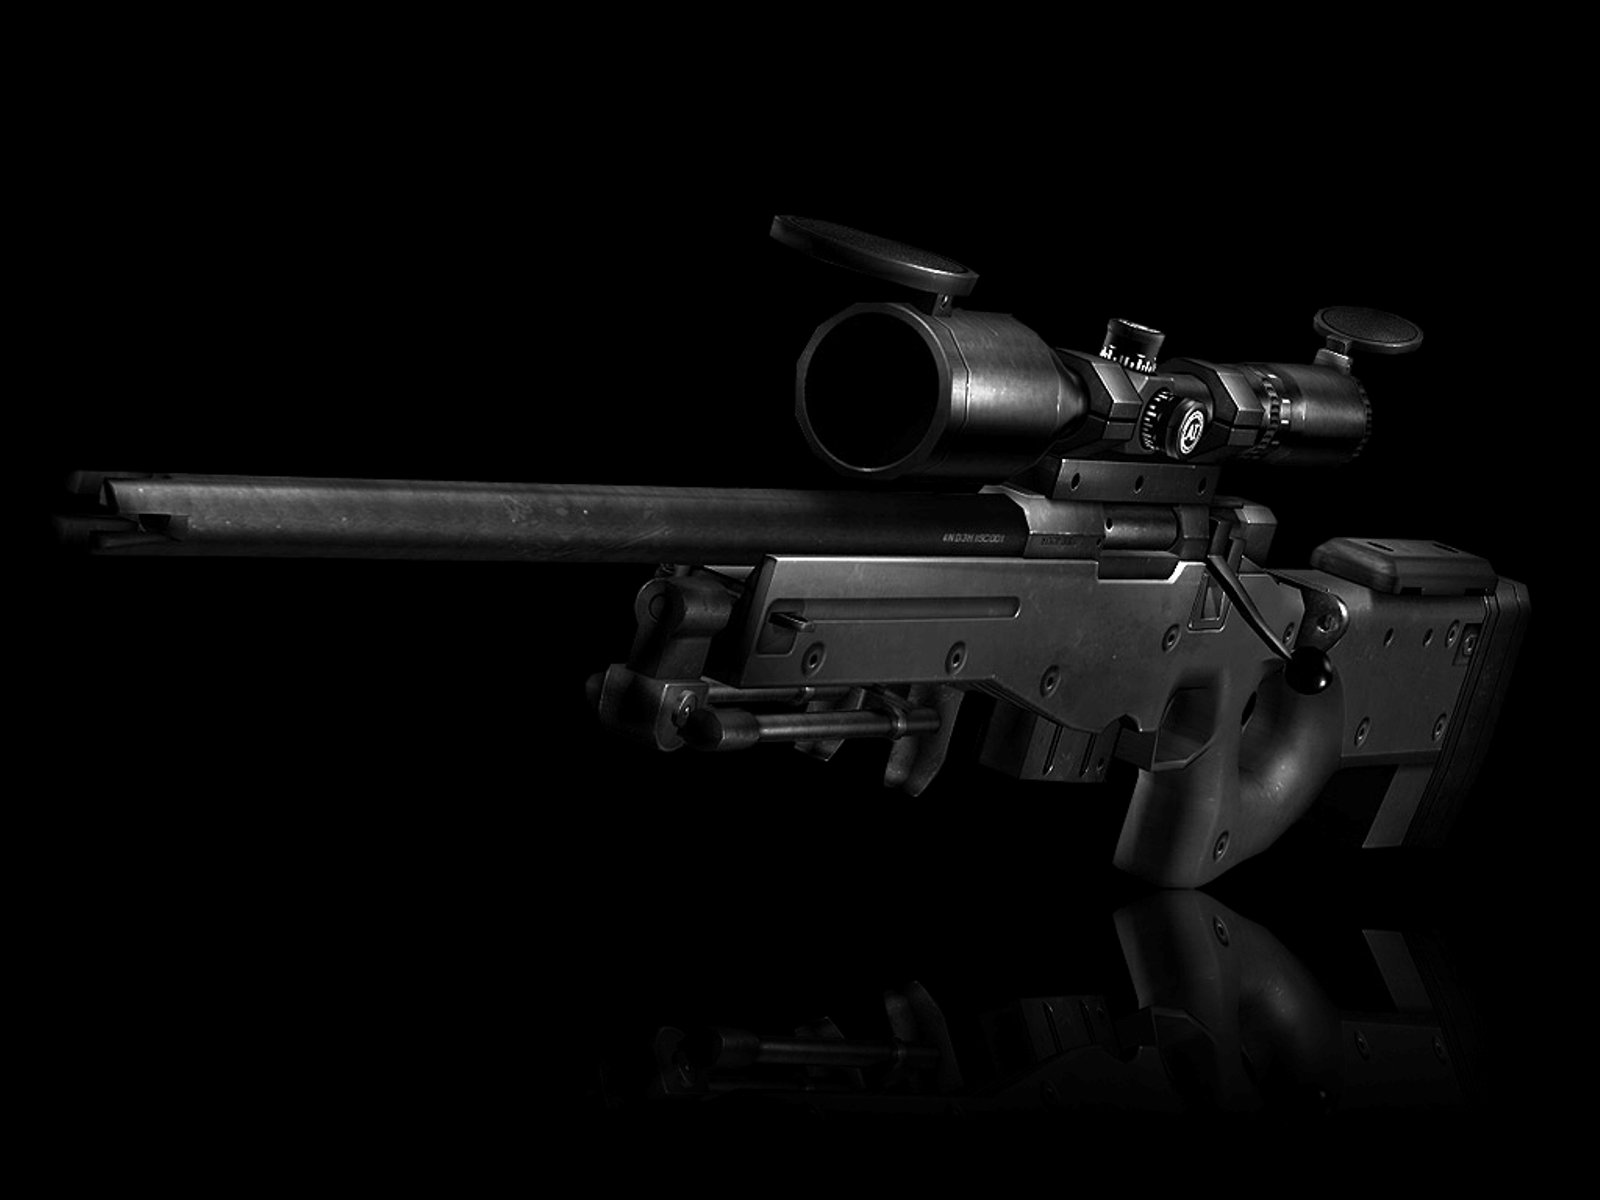 Best Sniper Rifle wallpaper ID:282948 for High Resolution hd 1600x1200 desktop